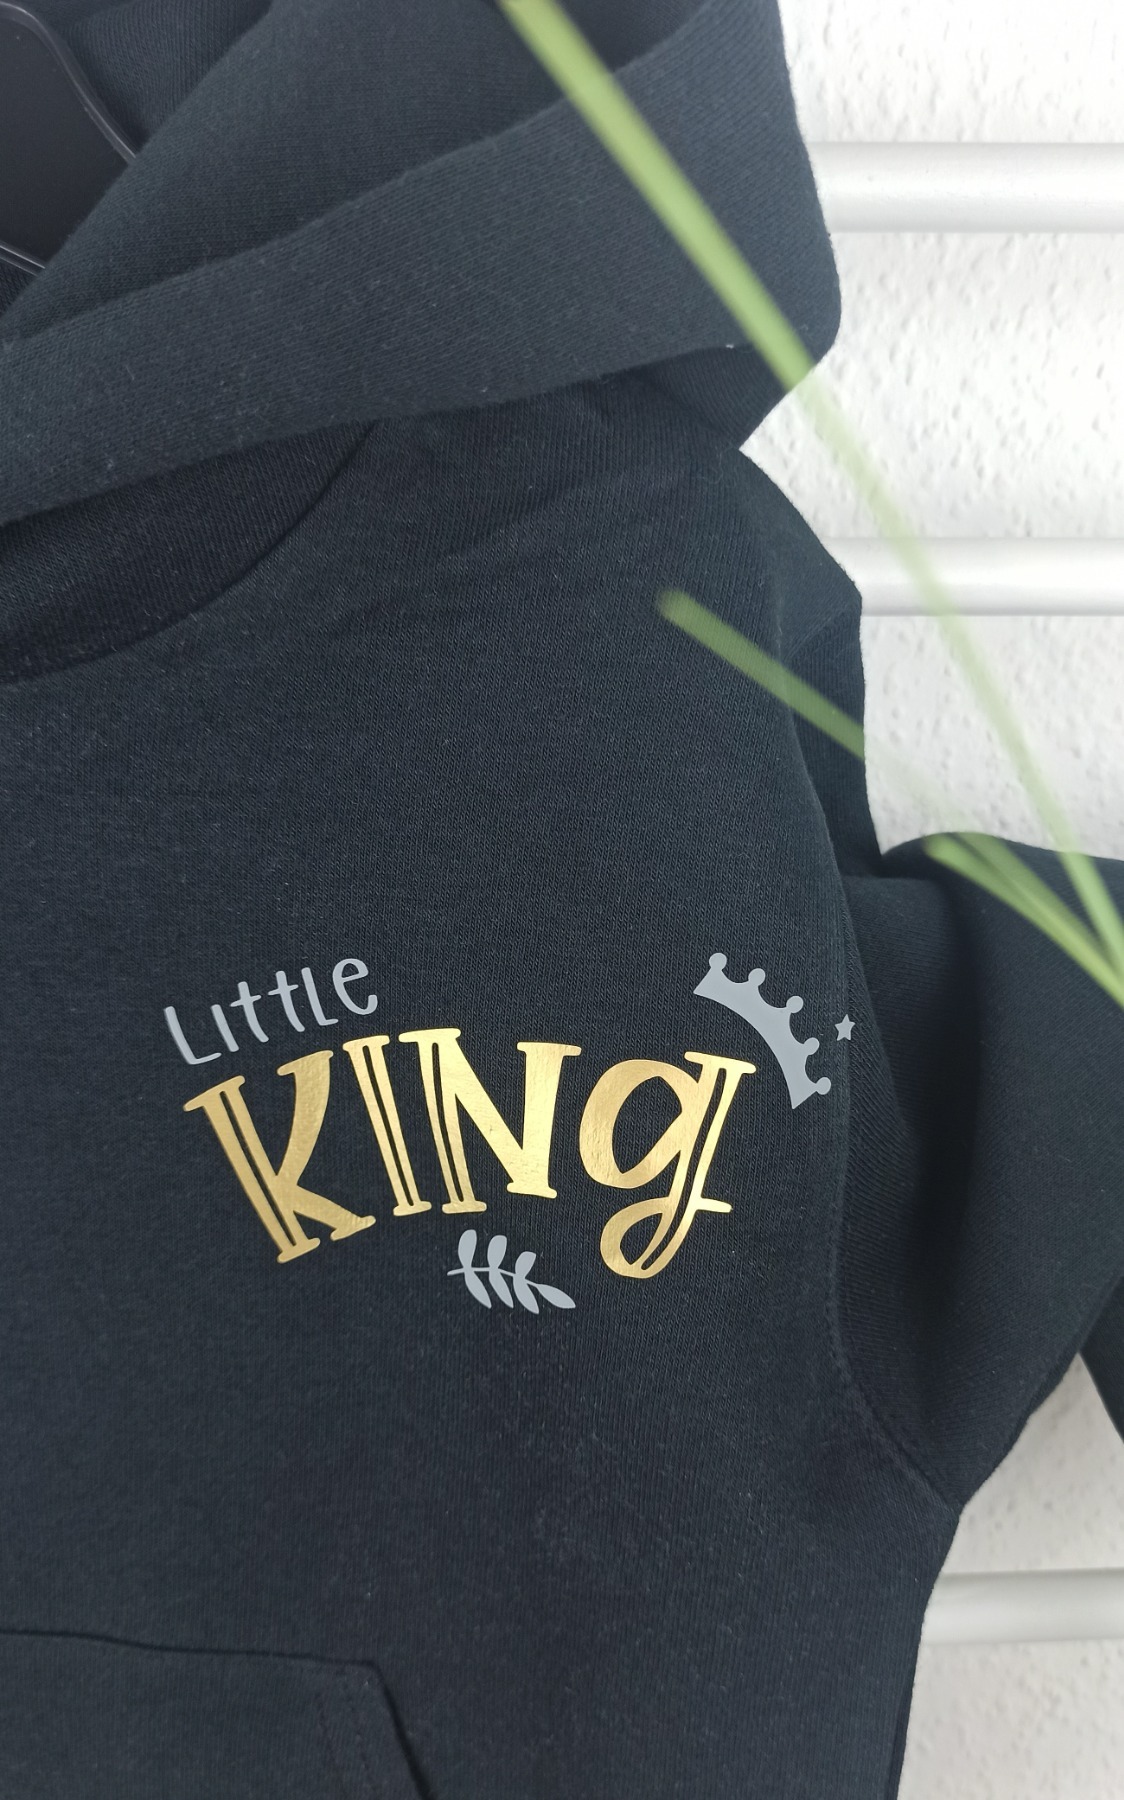 Sofortkauf bedruckter Hoodie in schwarz für Jungs Little King Gr 116 3